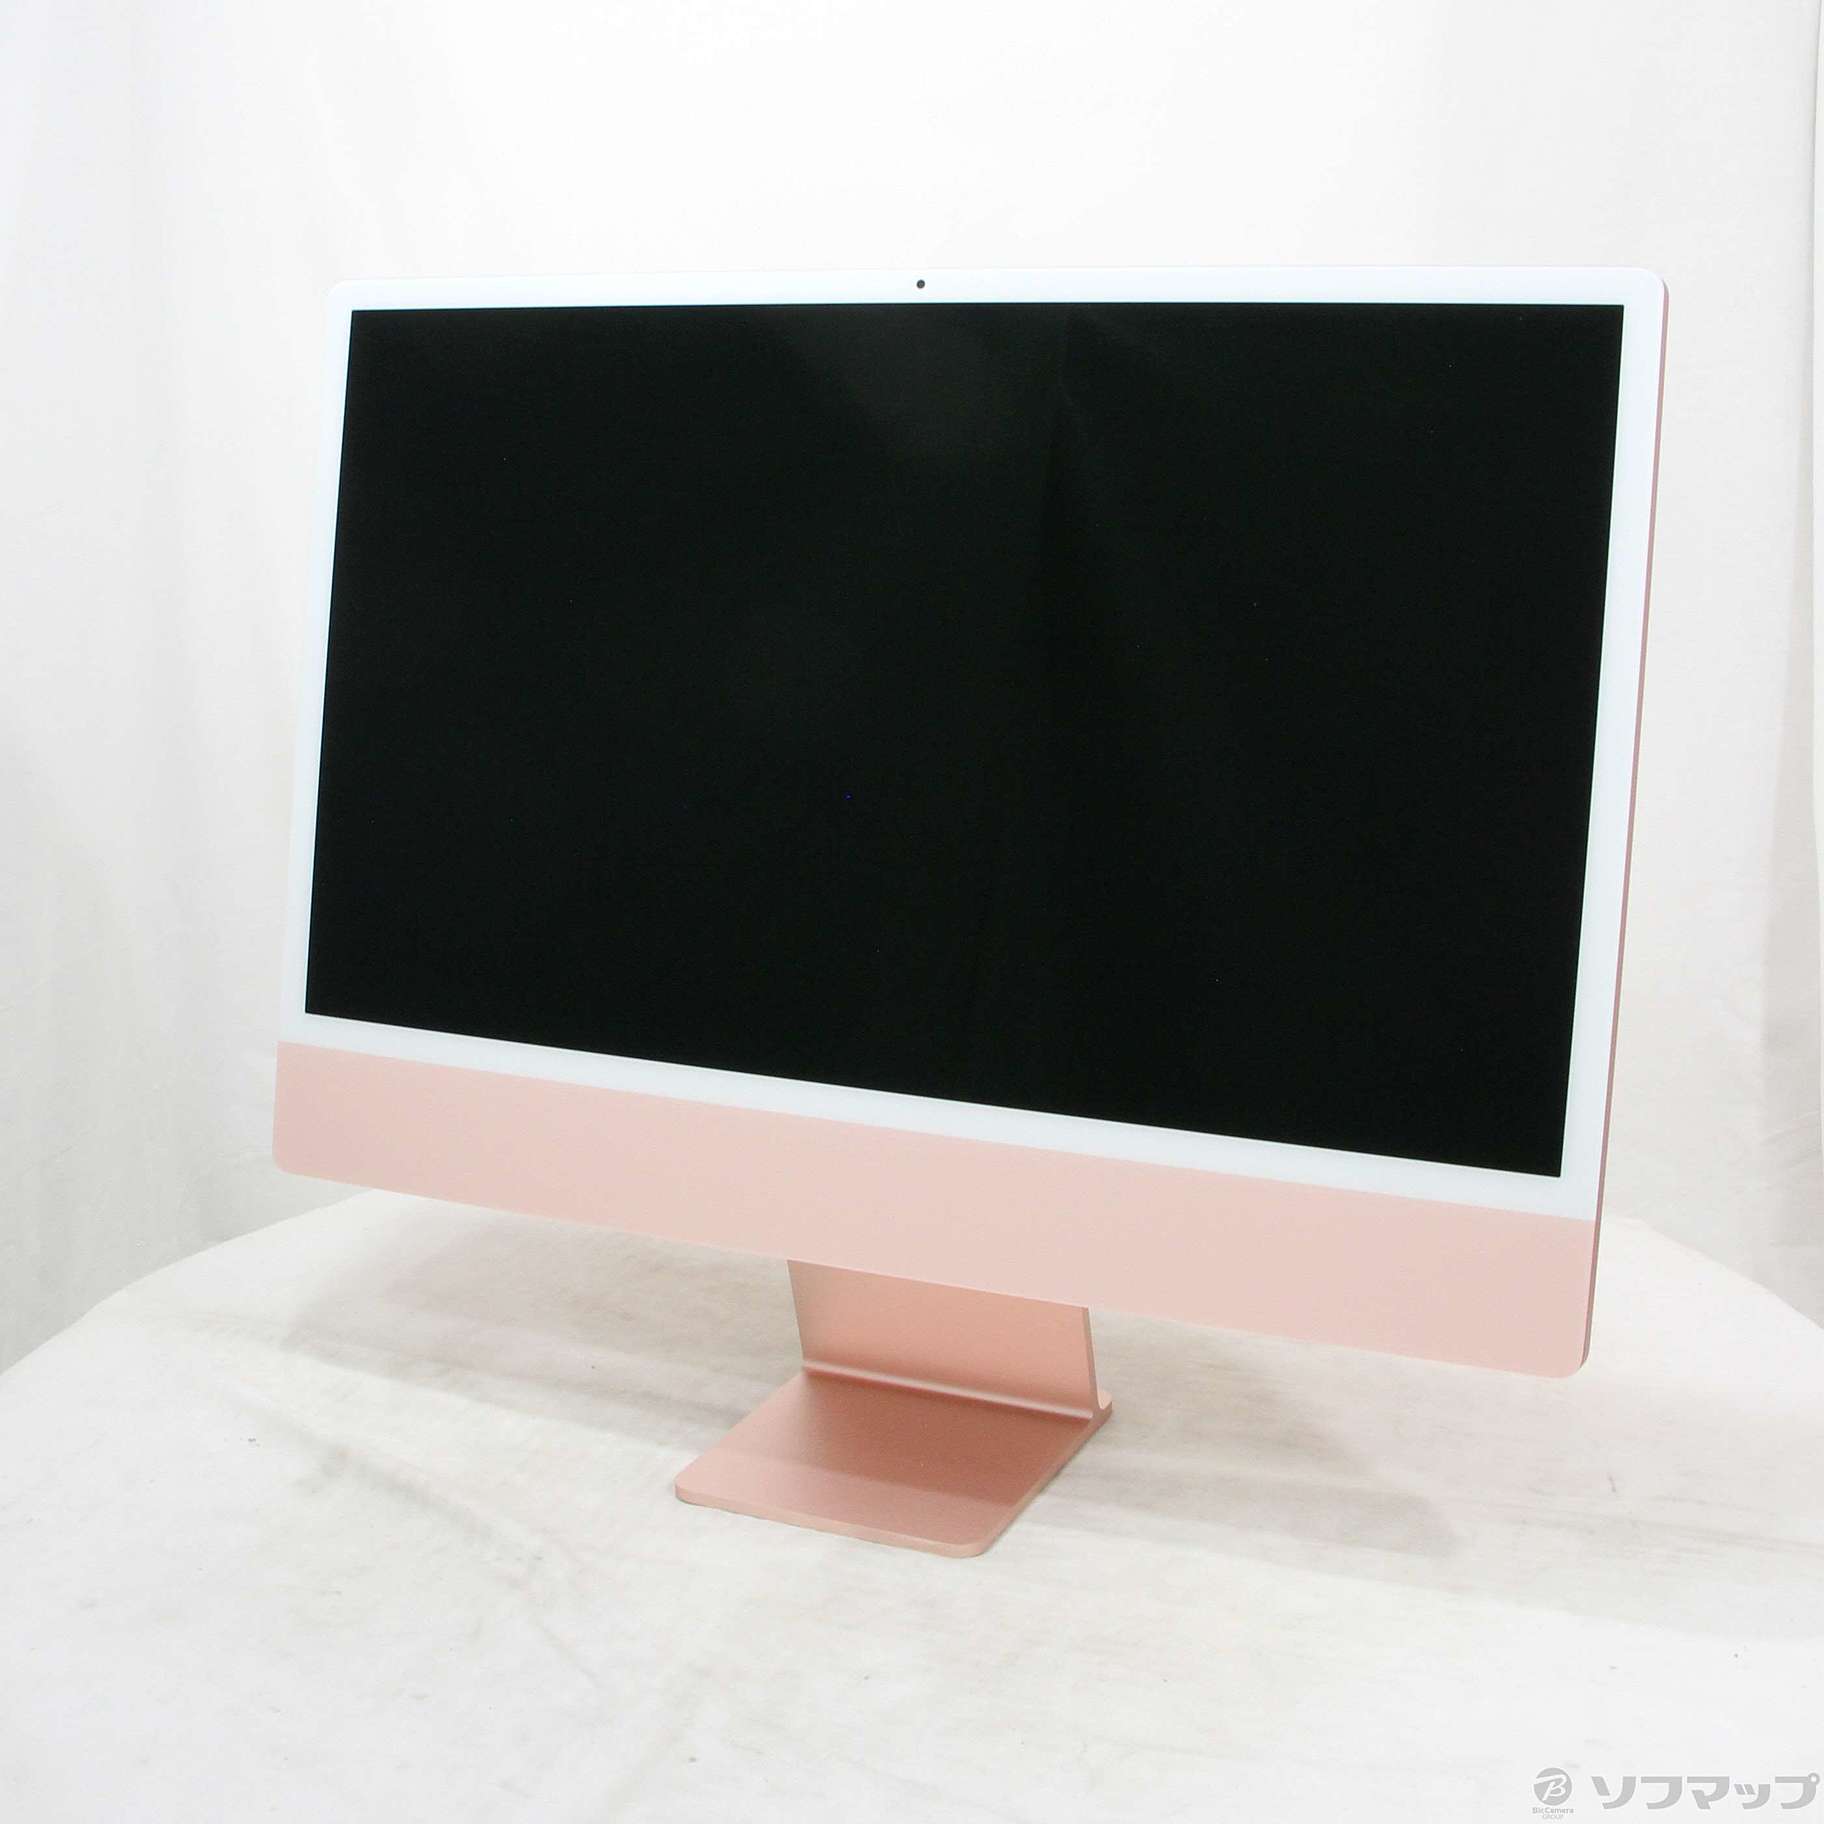 こんばんは24インチ ピンク 美品iMac 箱無し - Macデスクトップ